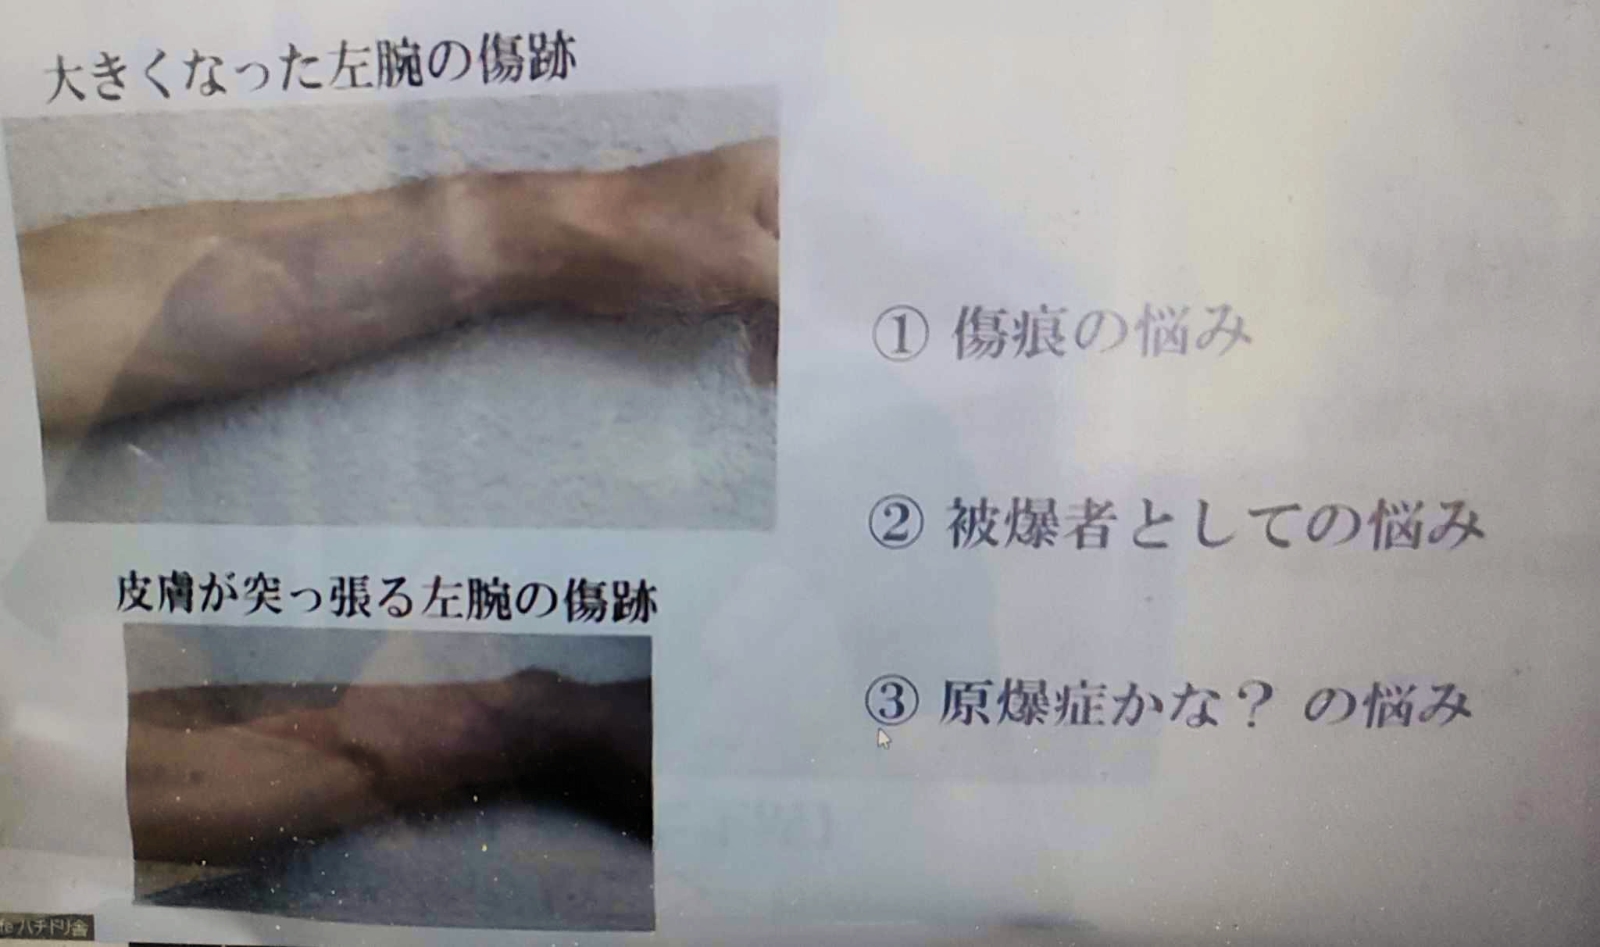 Okamoto-Injuries.jpg